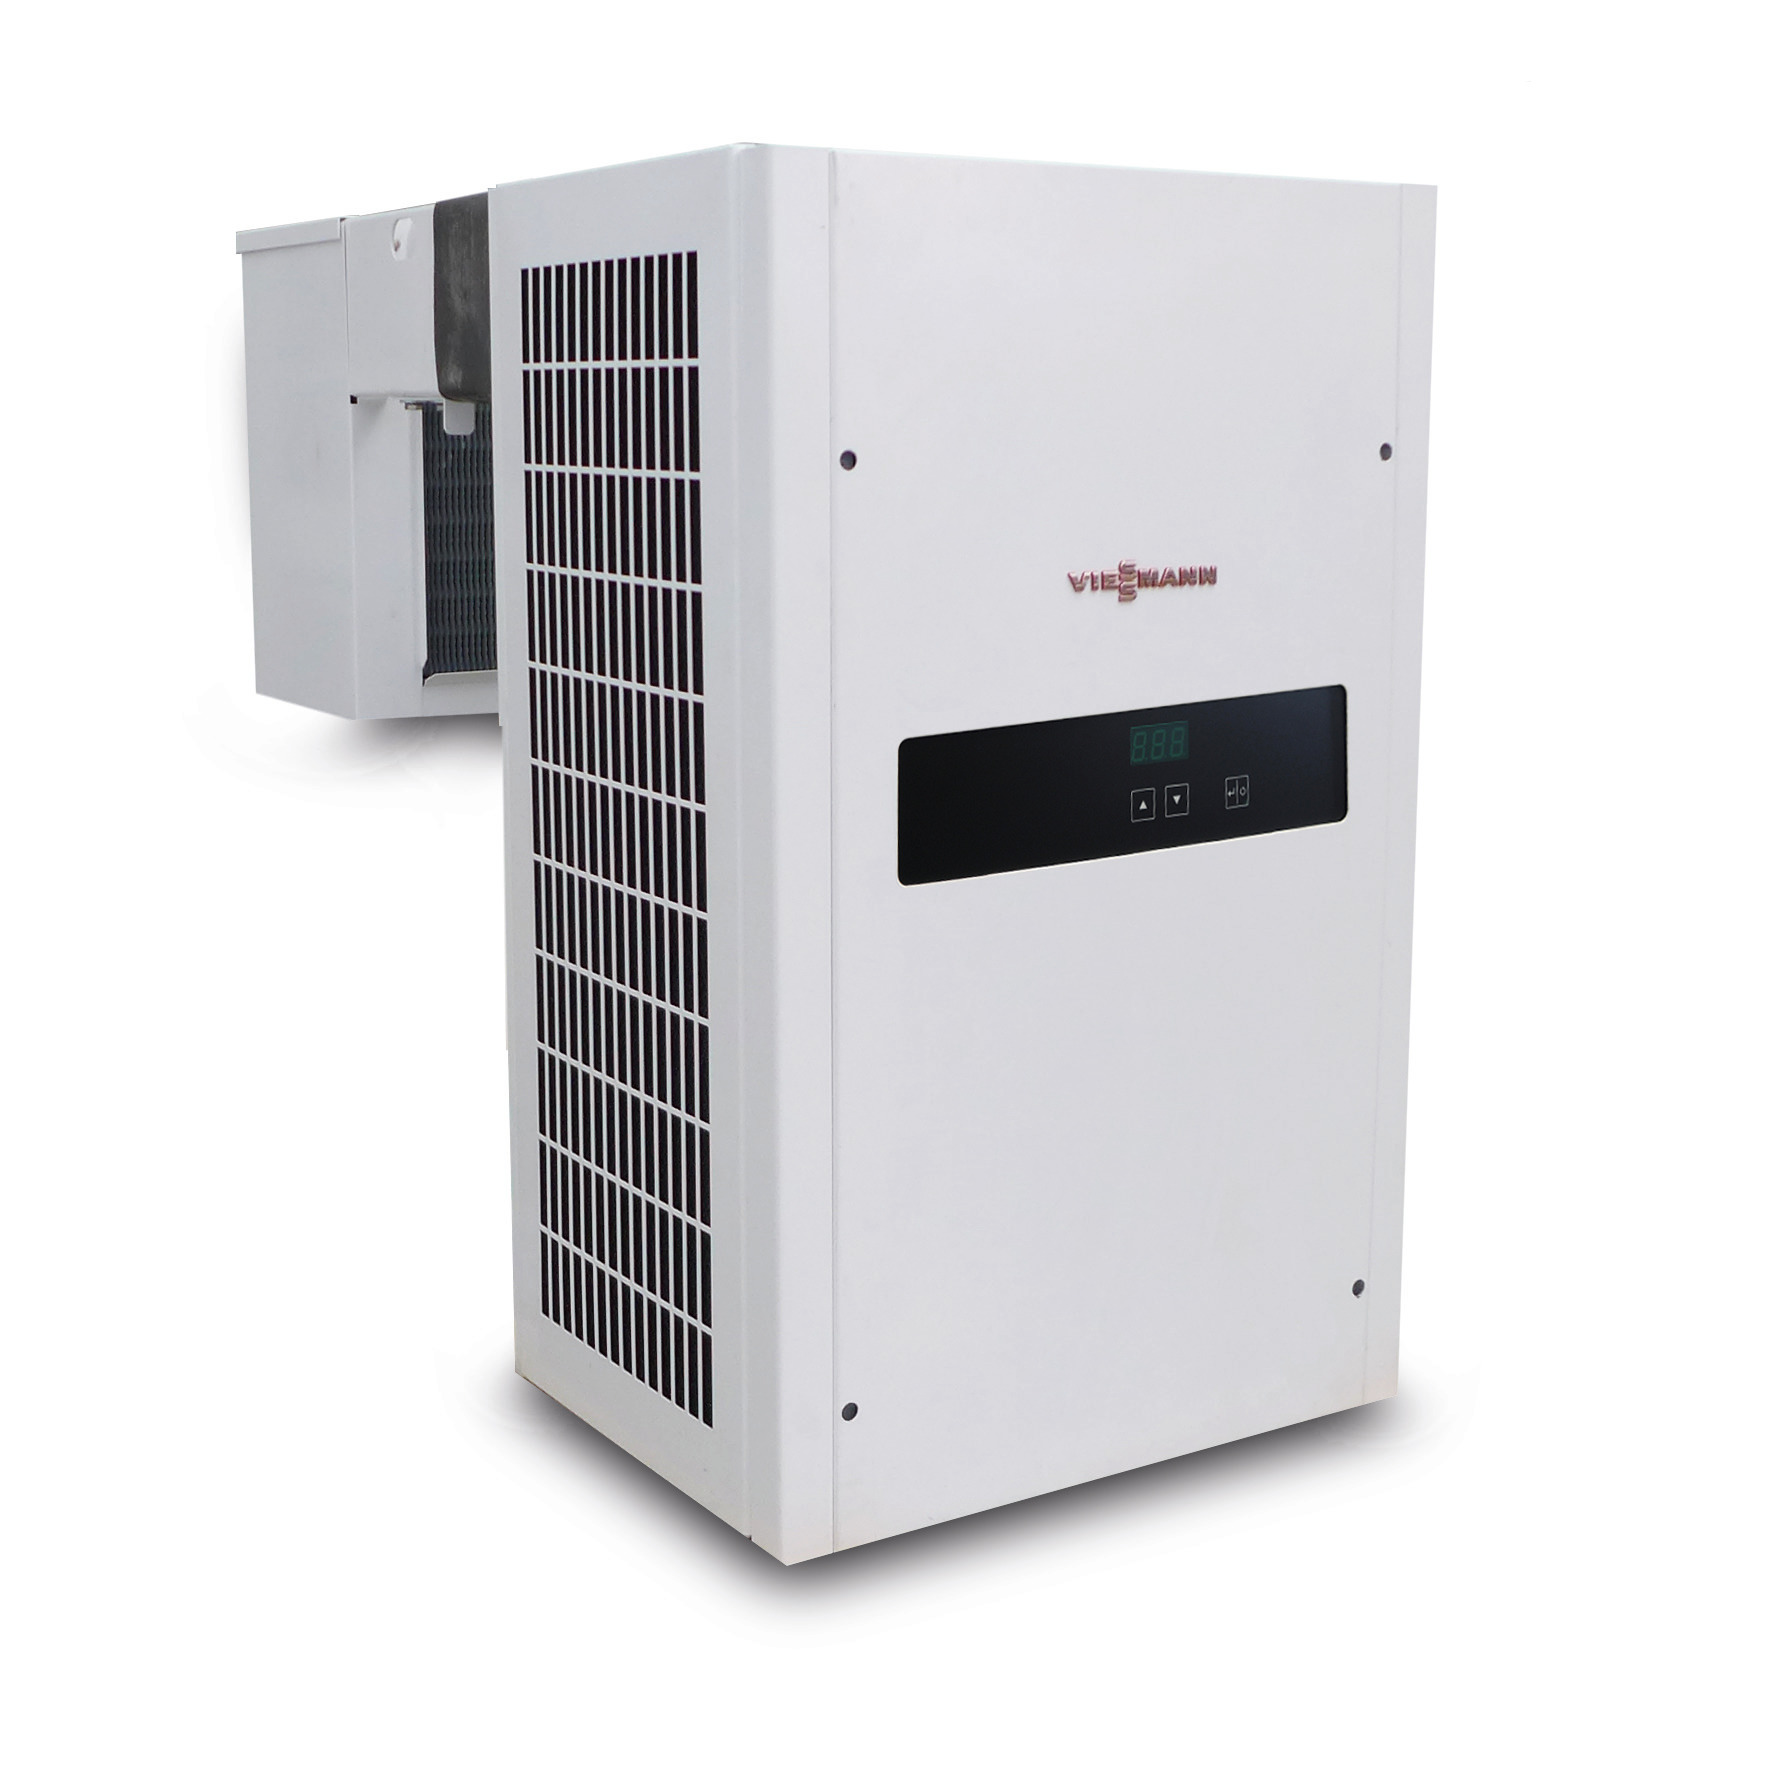 Huckepack-Kühlaggregat 0,93 kW / 230 V mit elektronischer Regelung